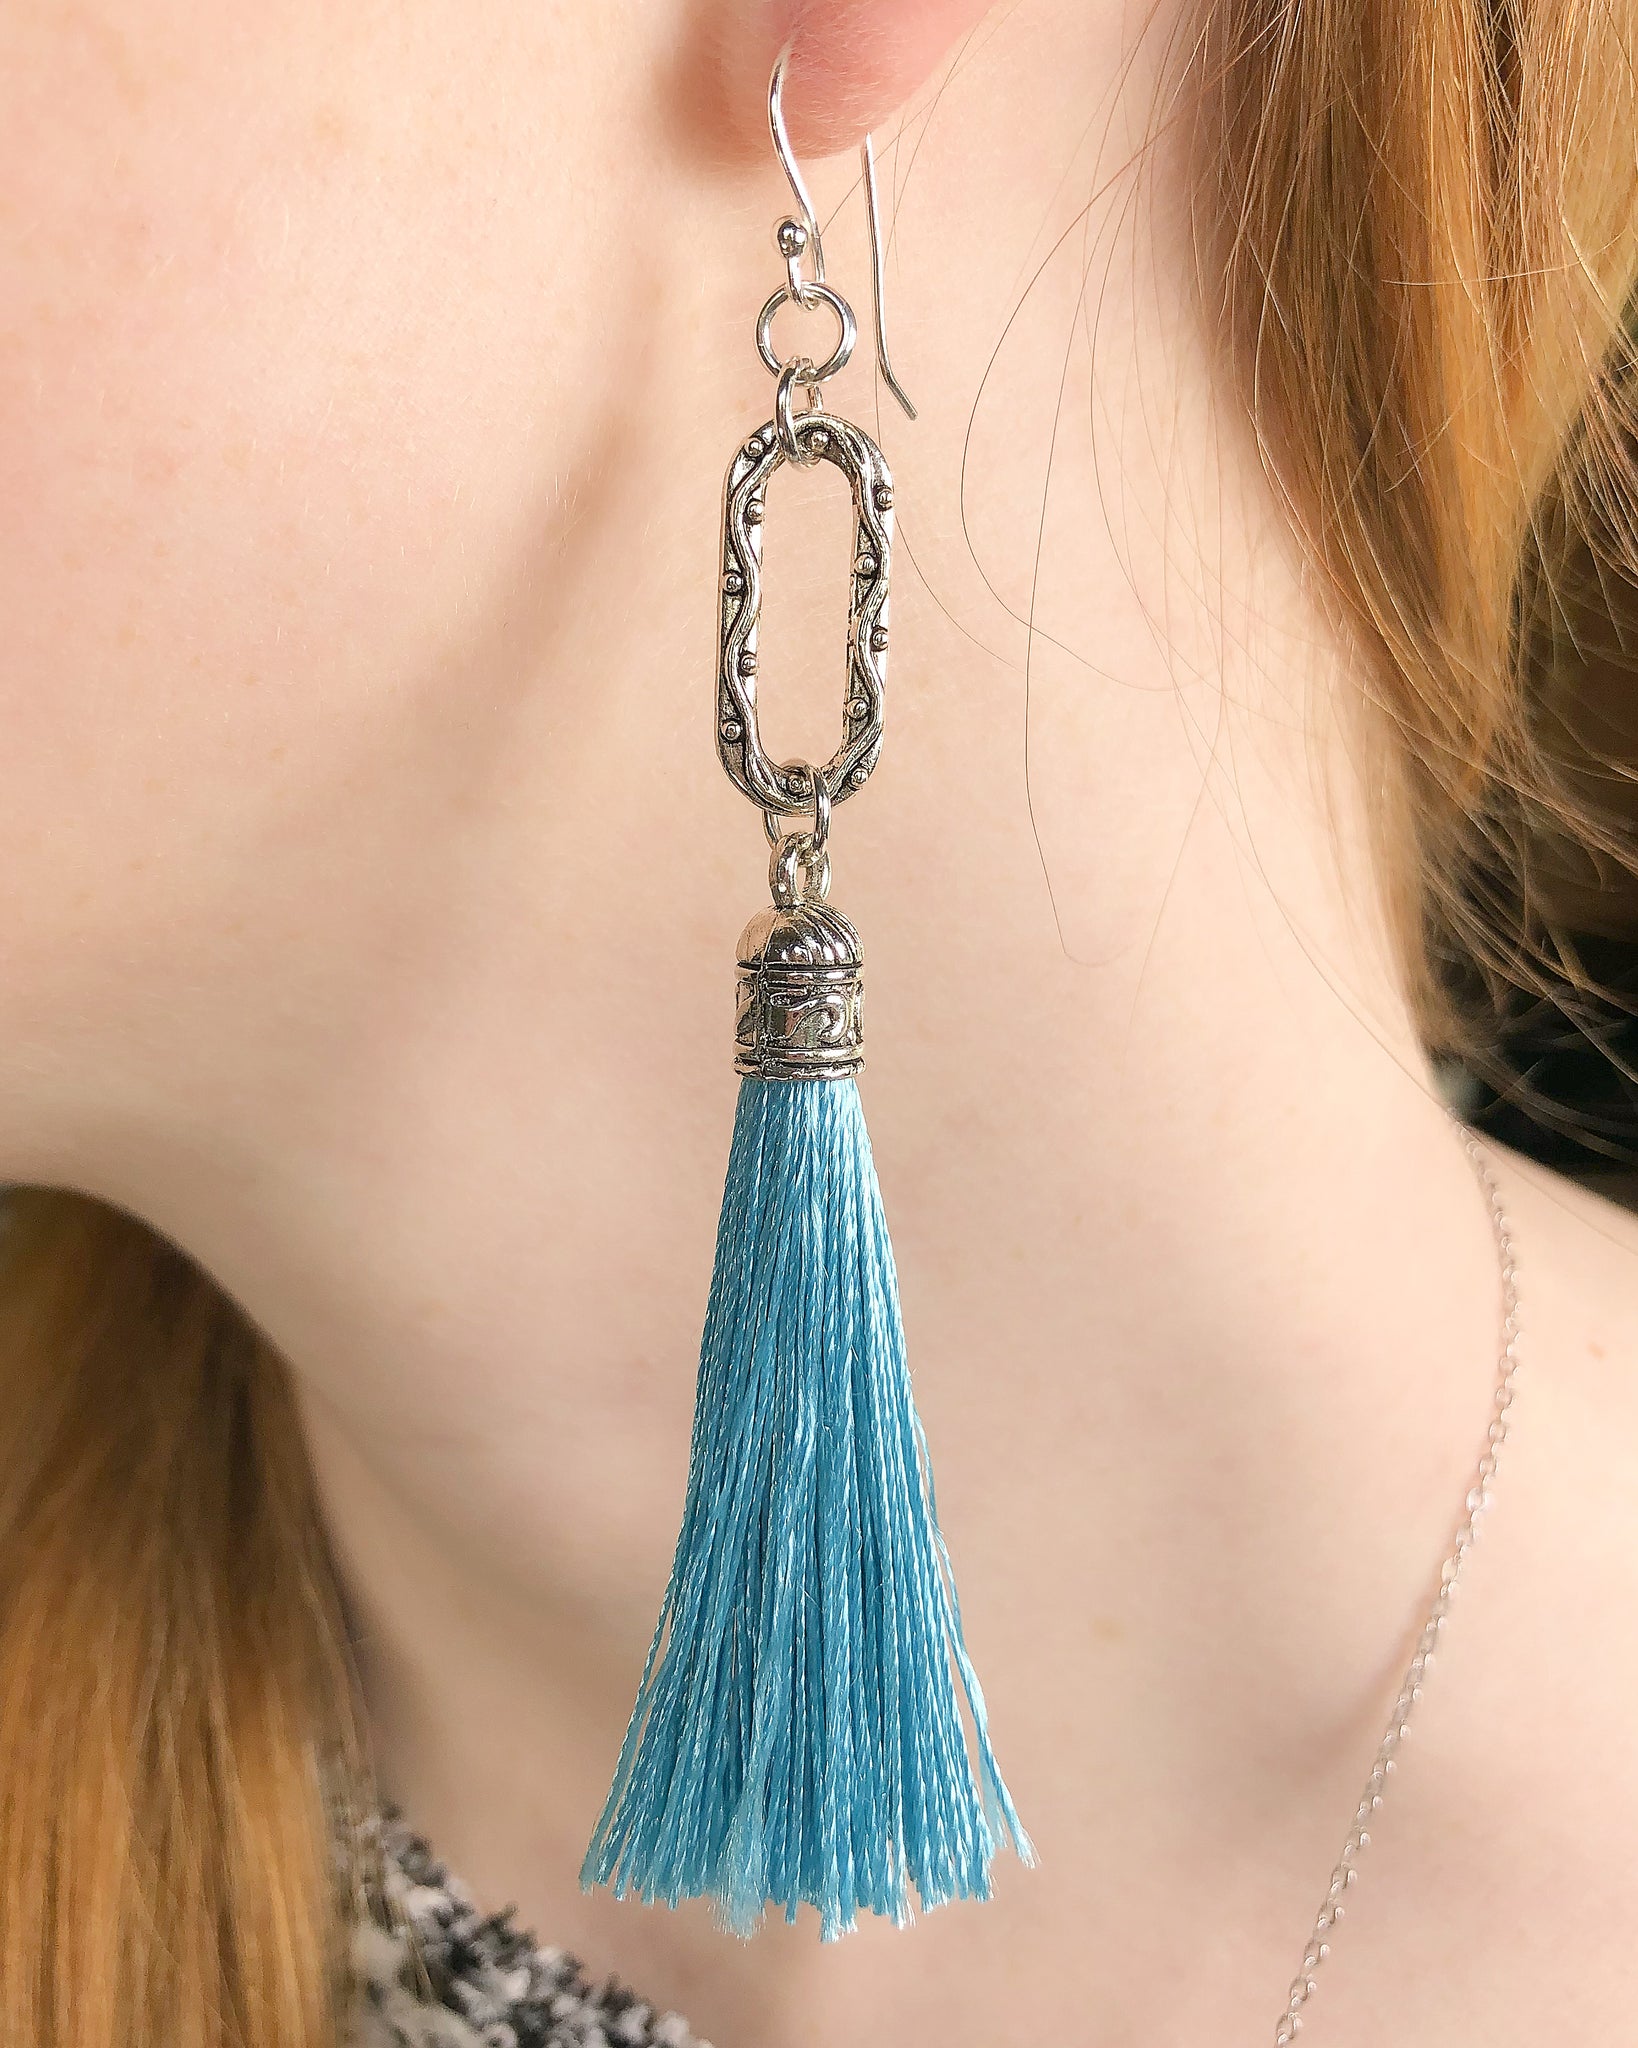 Aqua Blue Tassel Earrings on Sterling Silver Wires